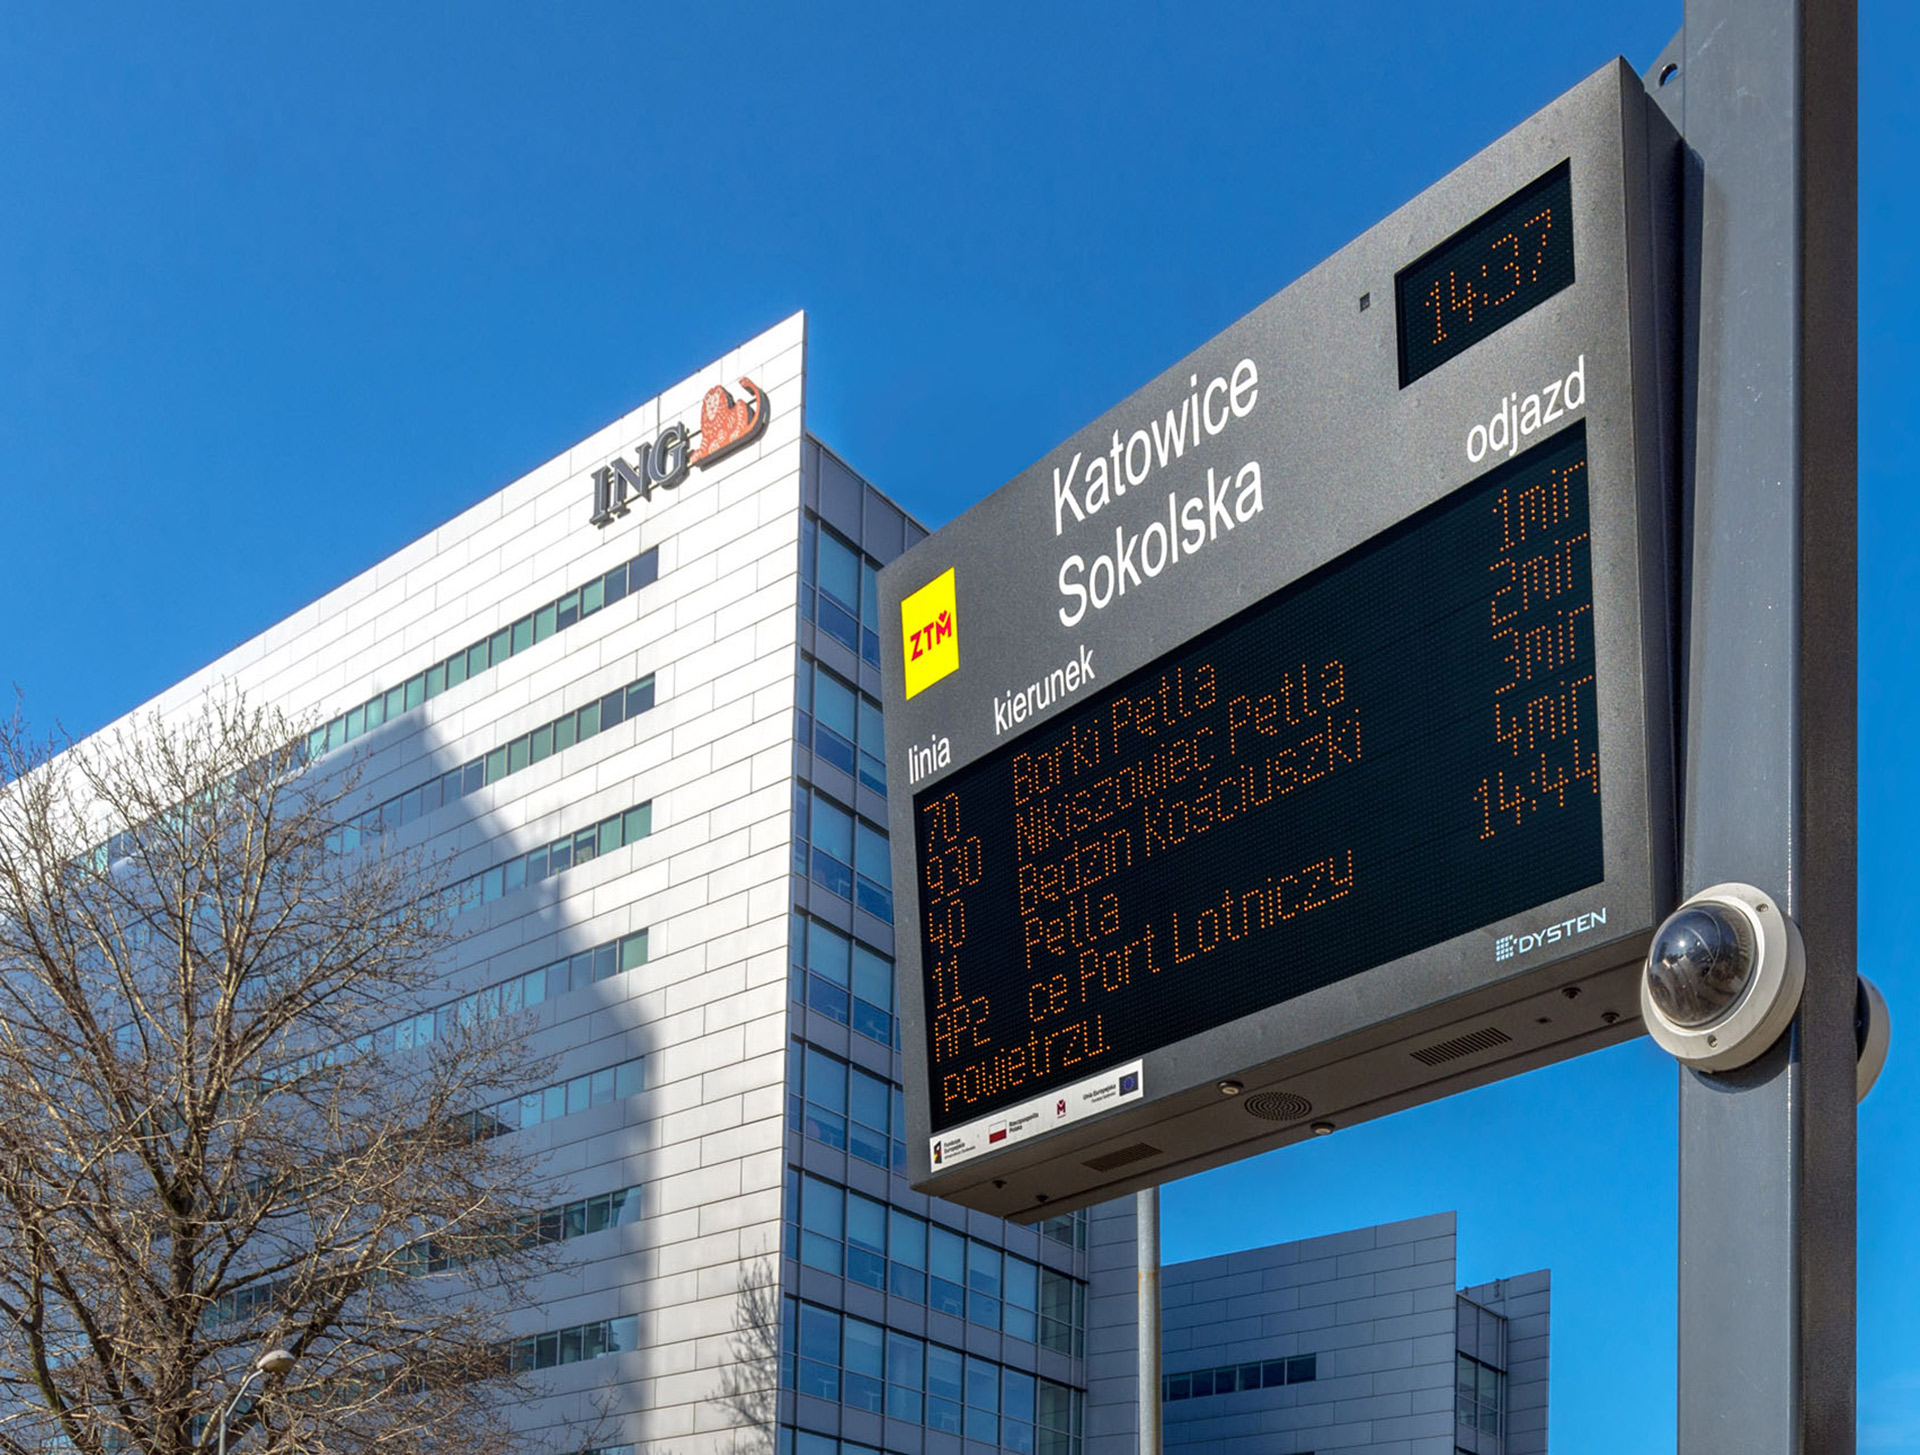 LED passenger information displays-boards. Wyświetlacze informacji pasażerskiej w technologii LED amber. SDIP GZM Metropolis, Poland. GZM Metropolia